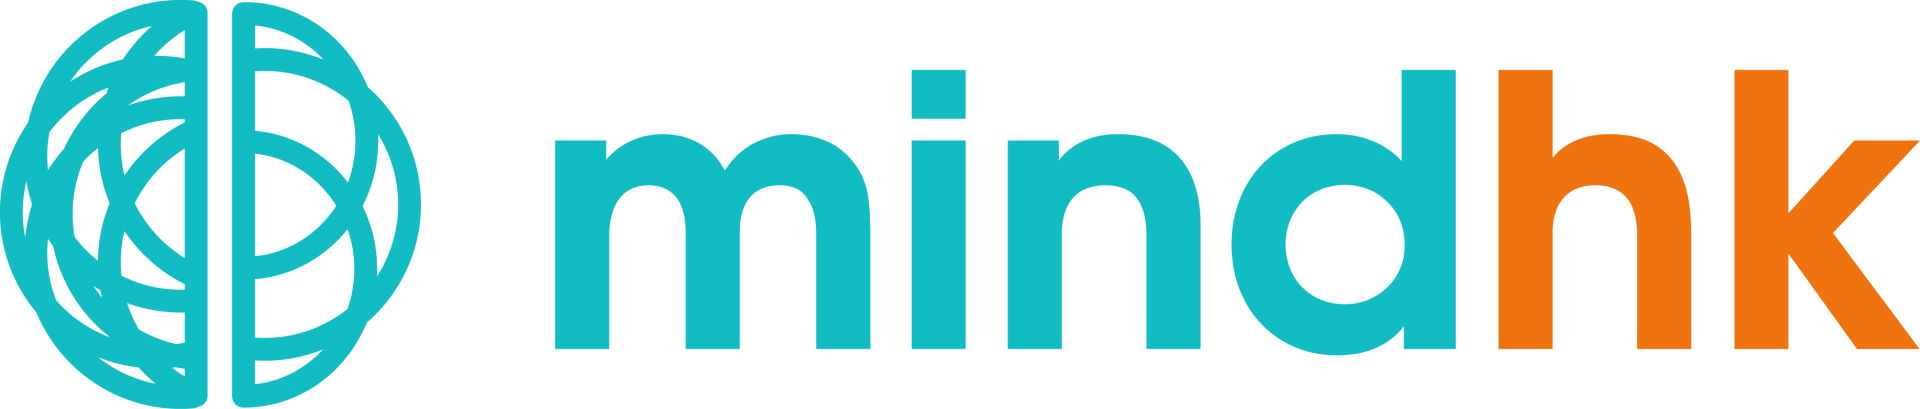 mindhk_logo